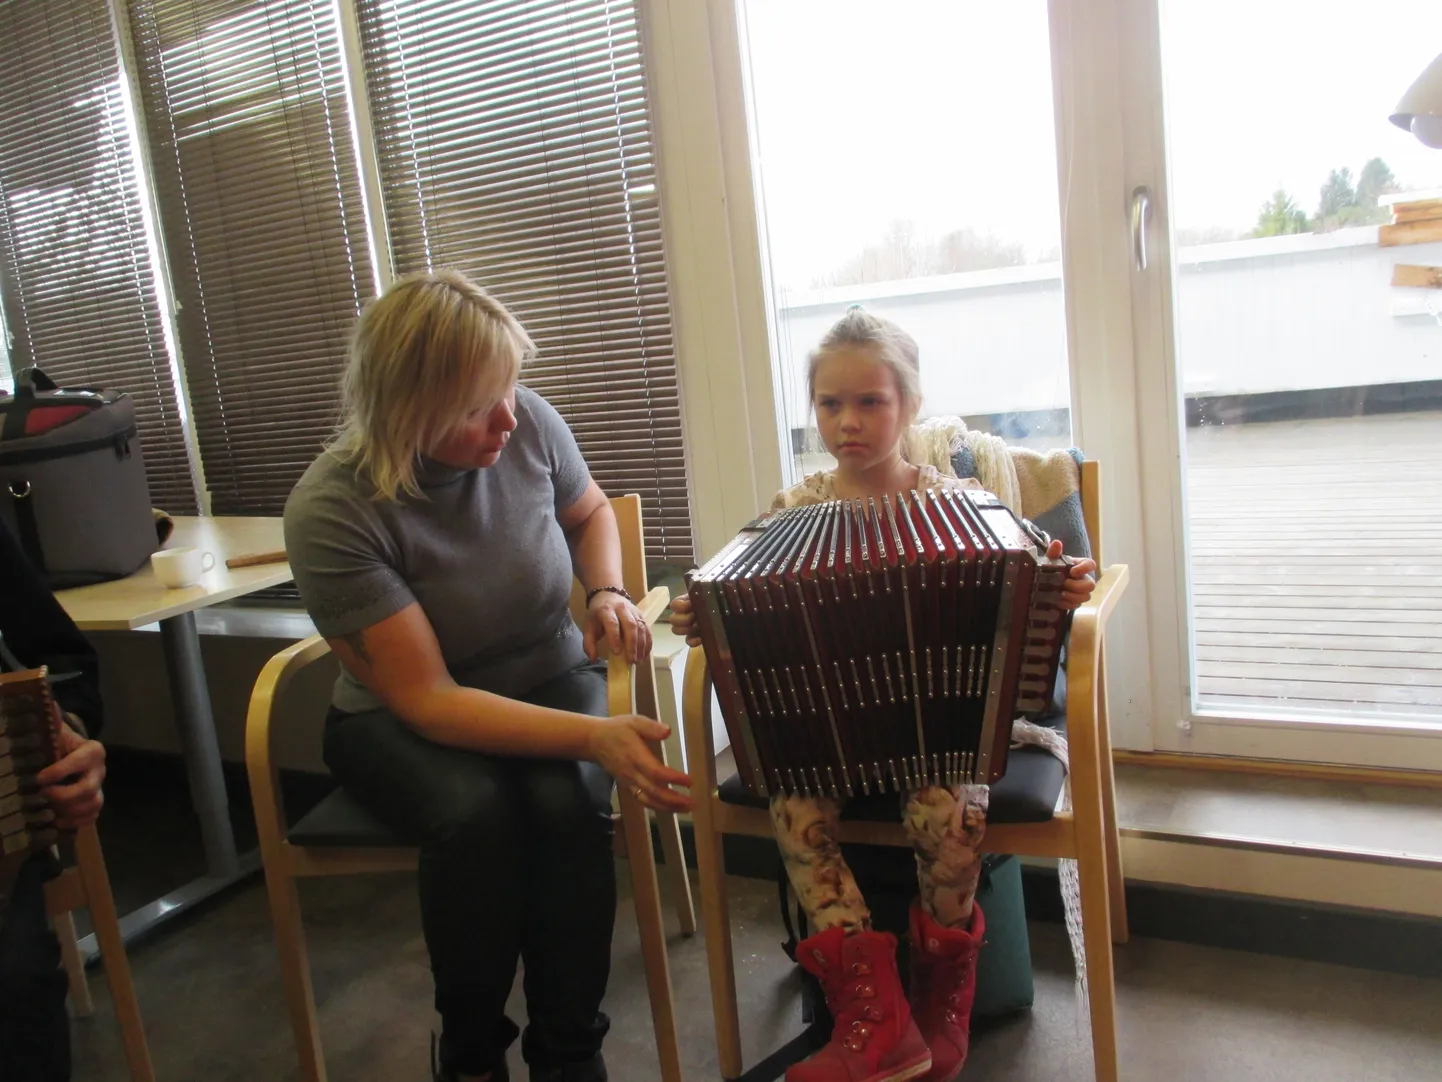 TULEVANE LÕÕTSPILLIMÄNGIJA. Karin Mihkelson Roobaka külast tuli Nasvale
lõõtspillimängu õppima koos kuue aastase tütrega, kellel samuti suur huvi
pillimängu vastu.